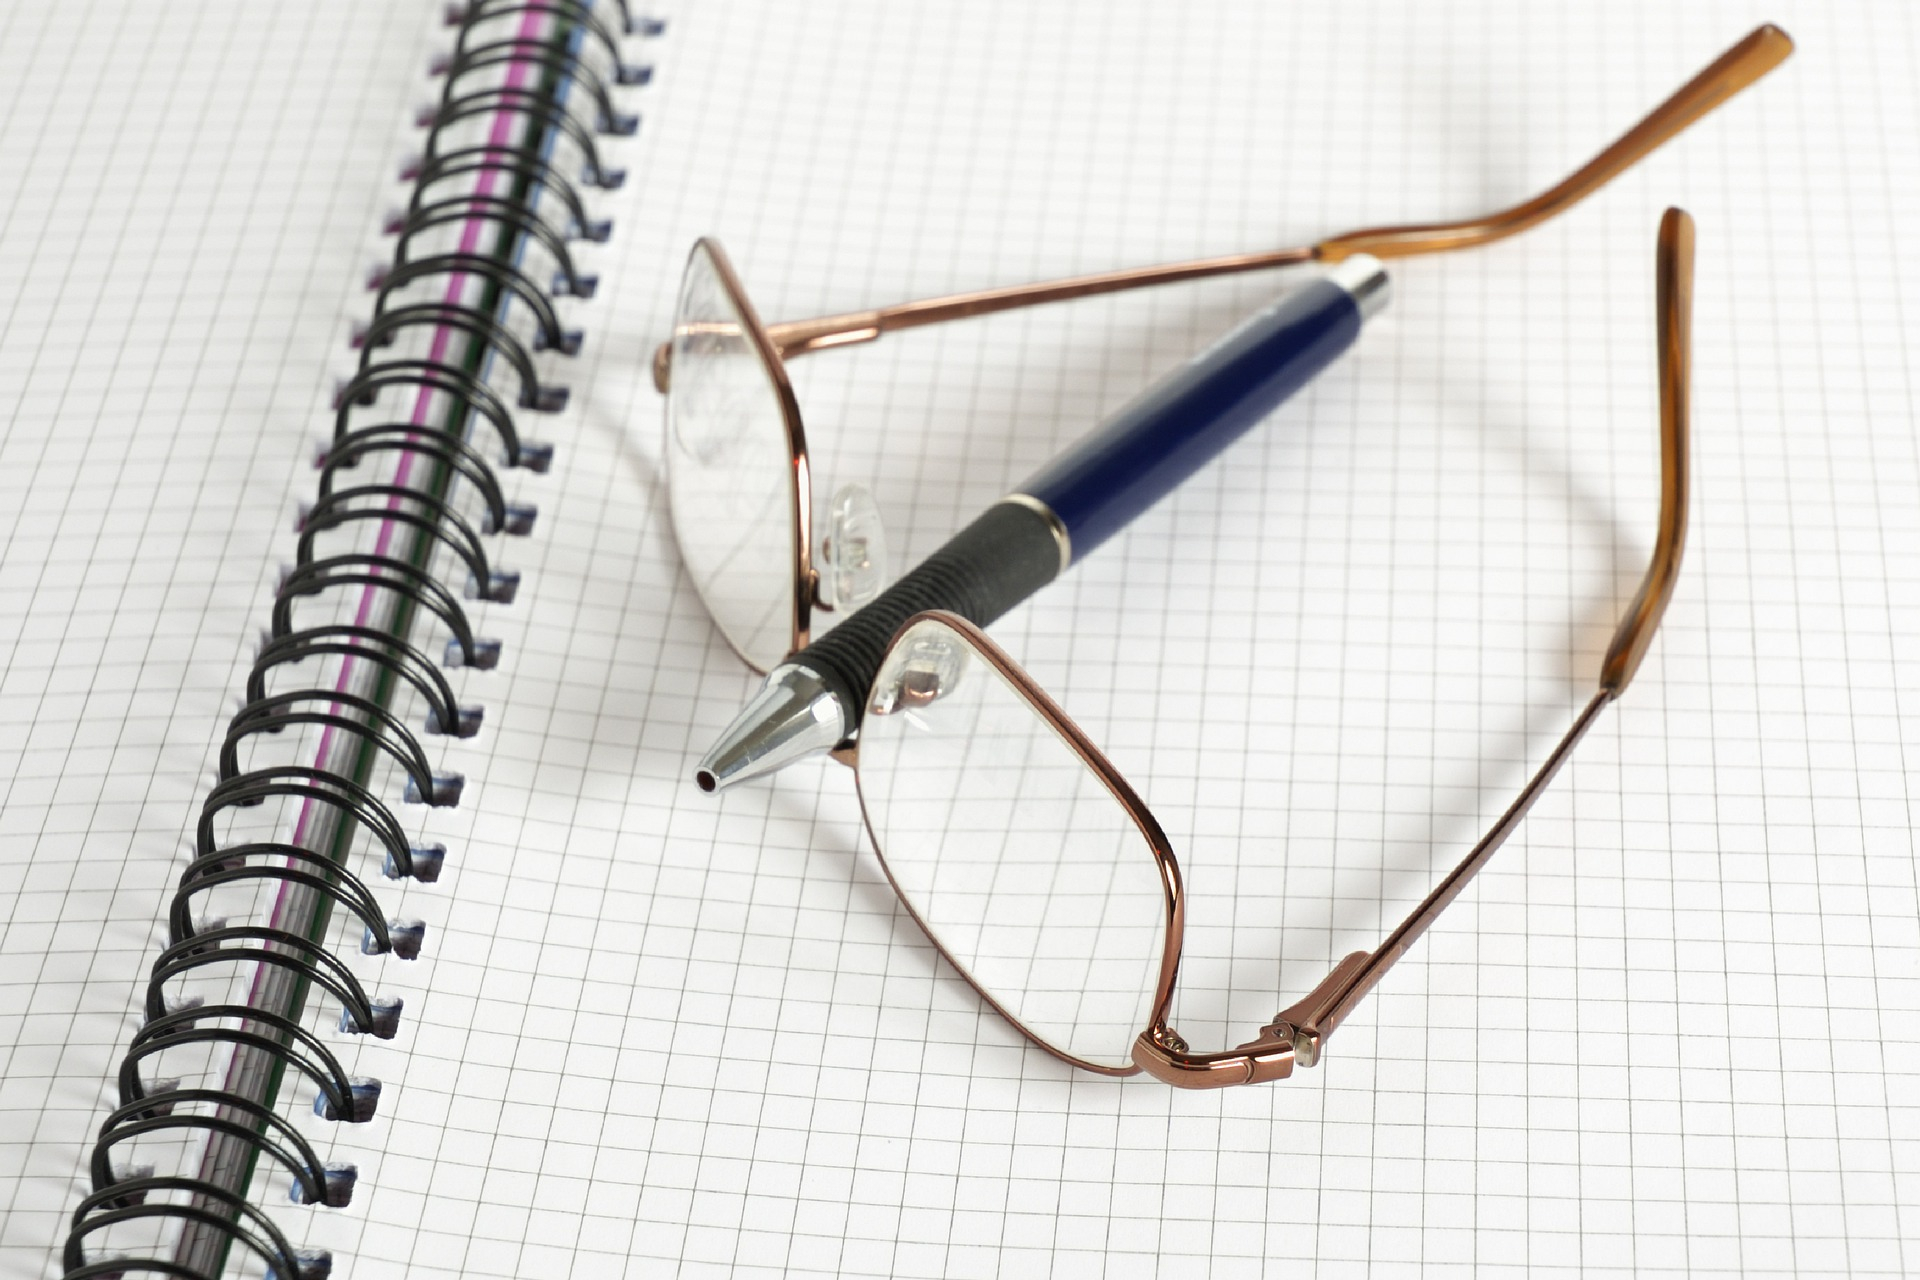 Unas gafas y un bolígrafo colocados sobre una libreta de matemáticas